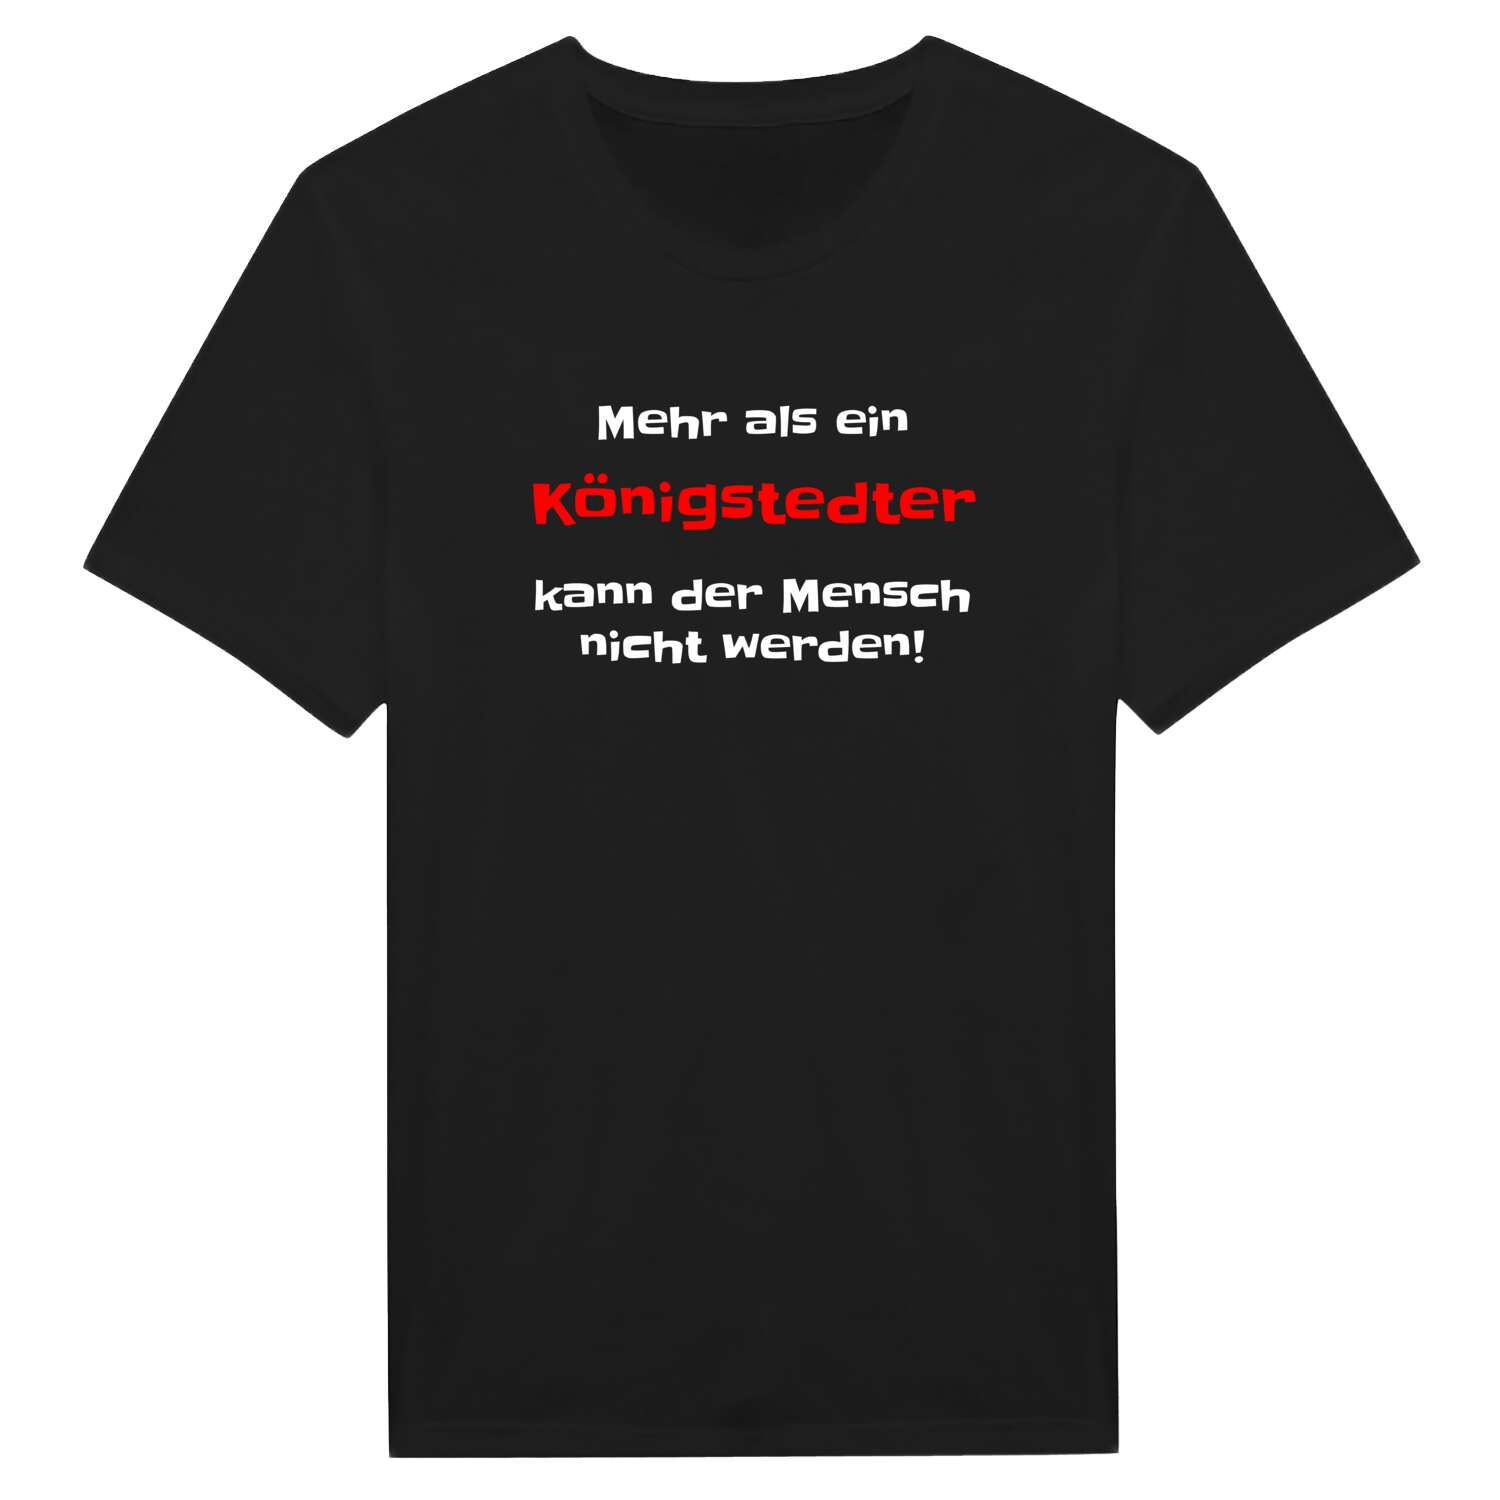 Königstedt T-Shirt »Mehr als ein«